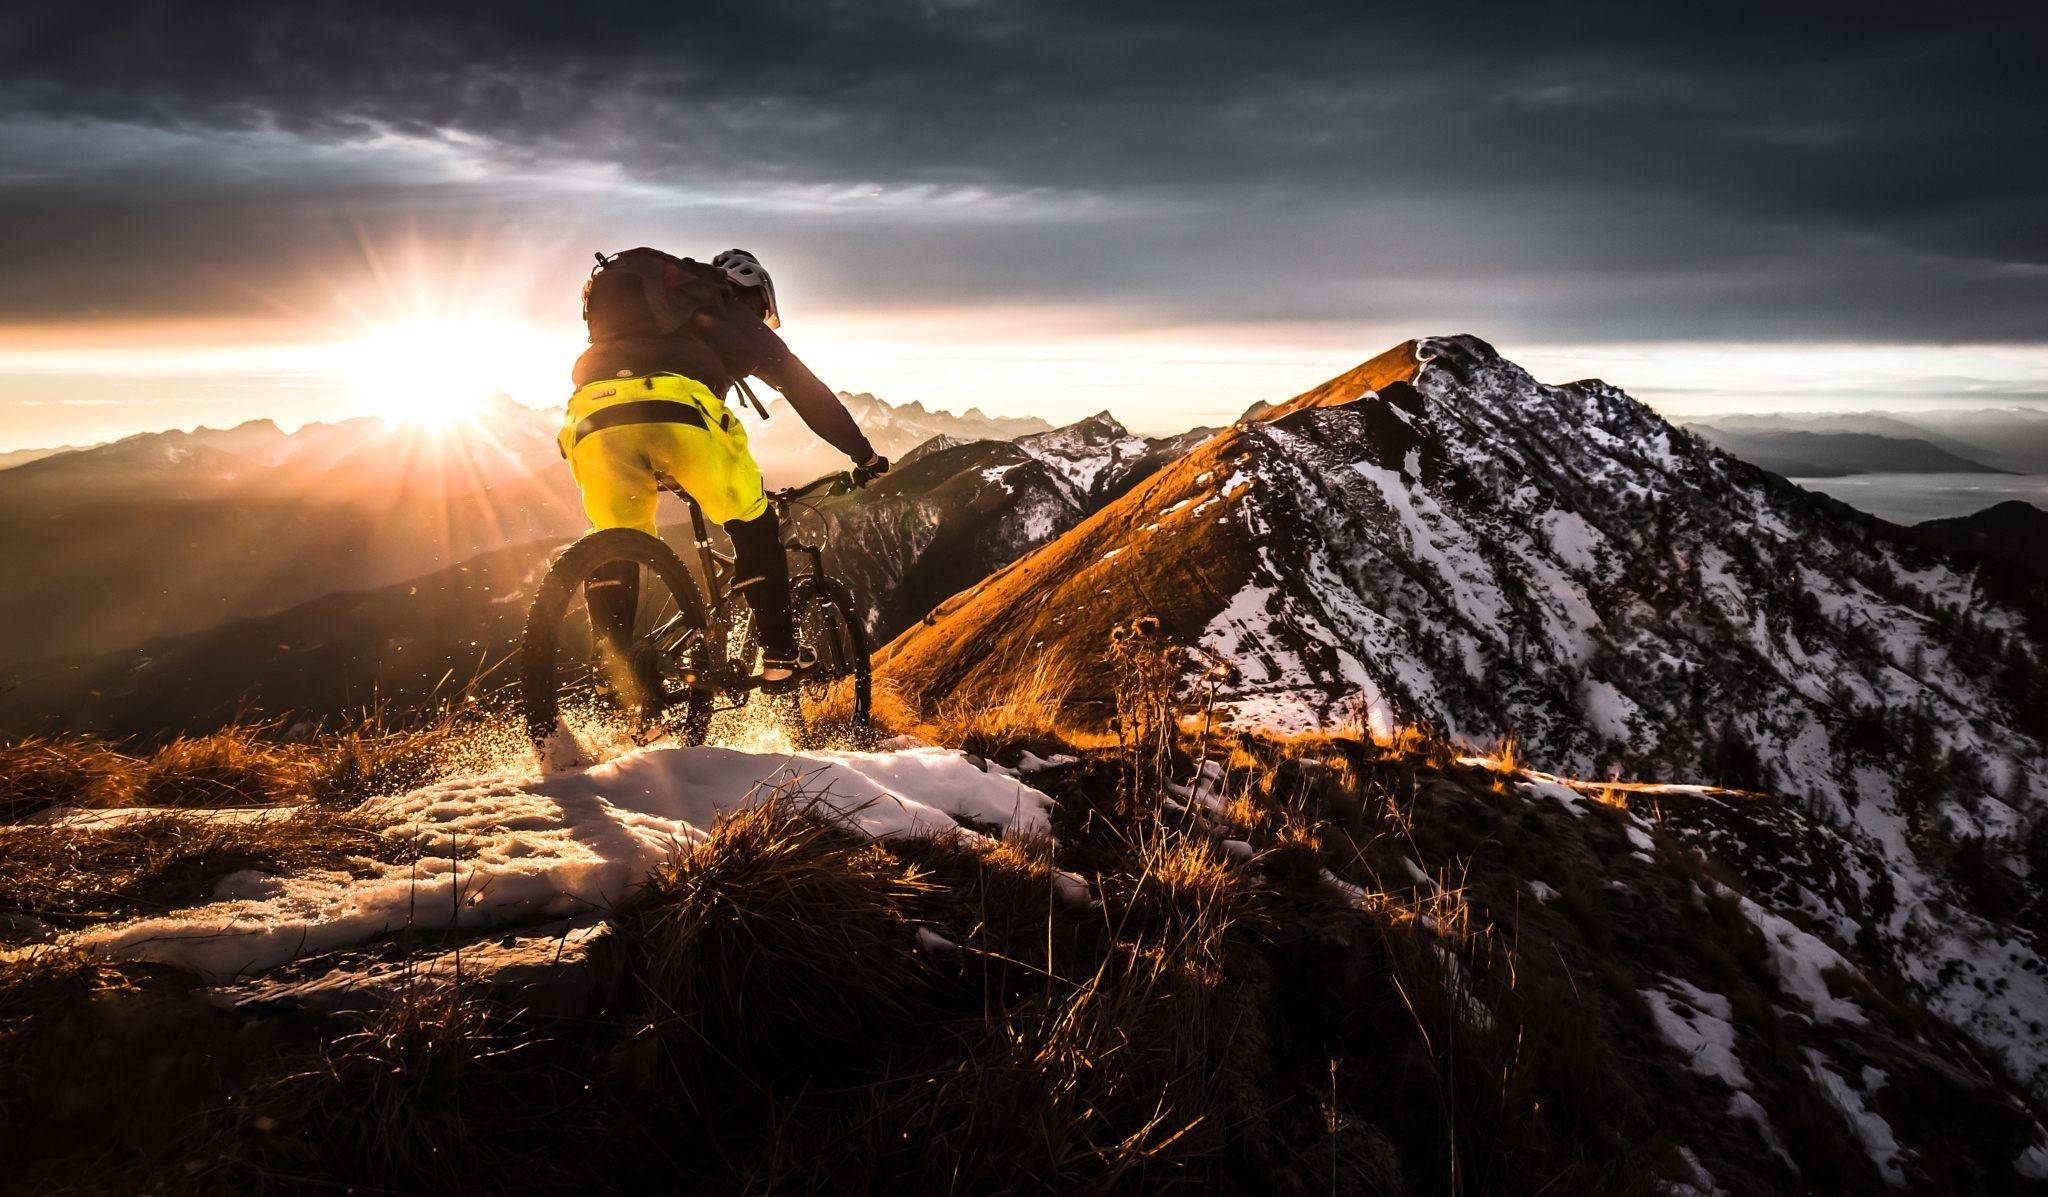 Mountain Bike Wallpapers - Top Free Mountain Bike Backgrounds ...